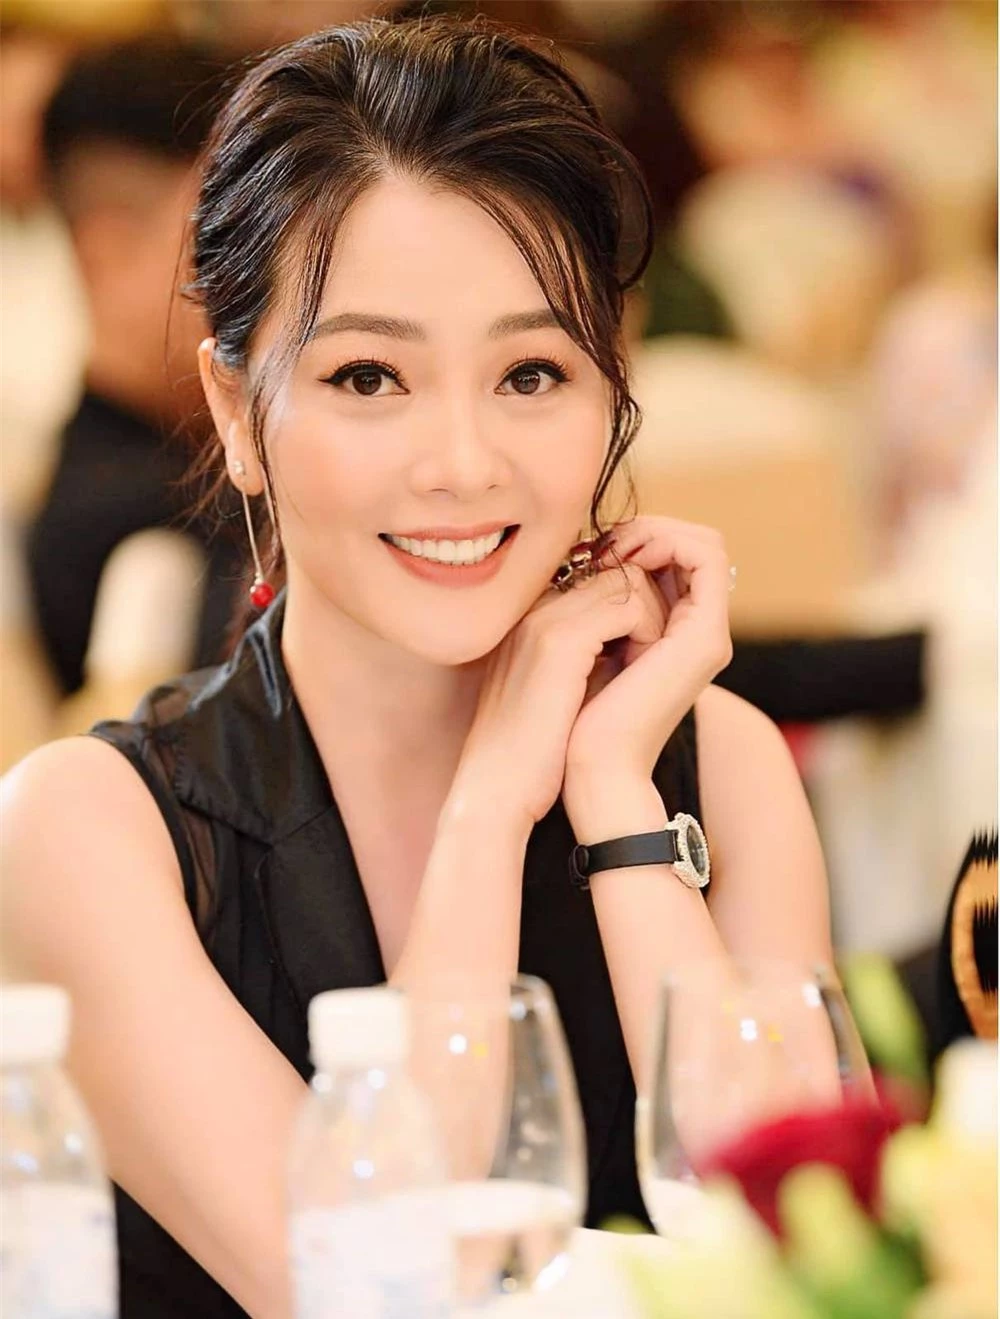 Hoa hậu Quý bà Hoàng Yến sau 13 năm đăng quang: Cuộc sống sung túc, U50 như gái đôi mươi - Ảnh 4.